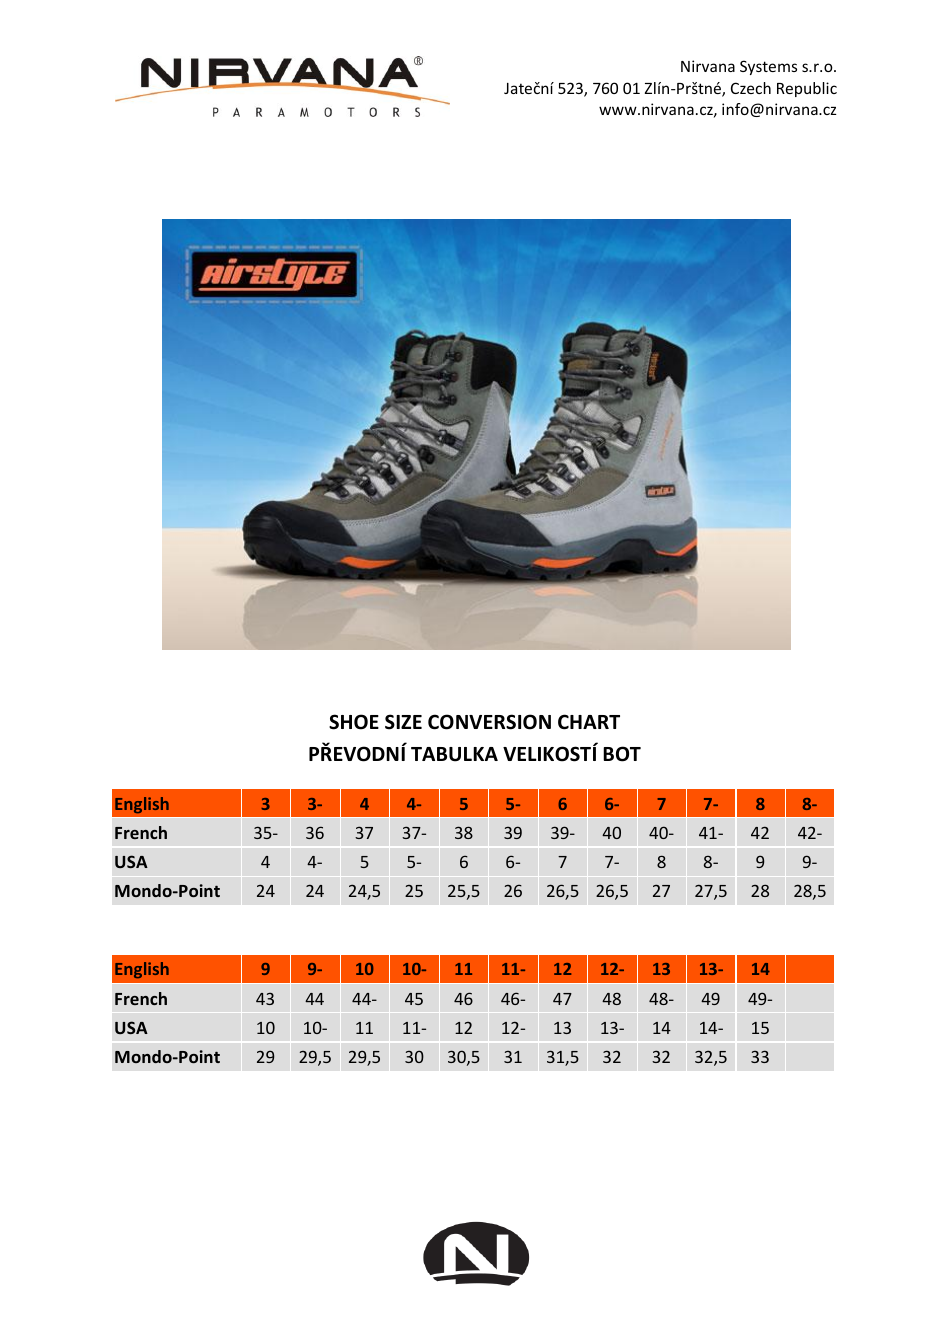 Shoe Size Conversion Chart (English / Polish), Page 1